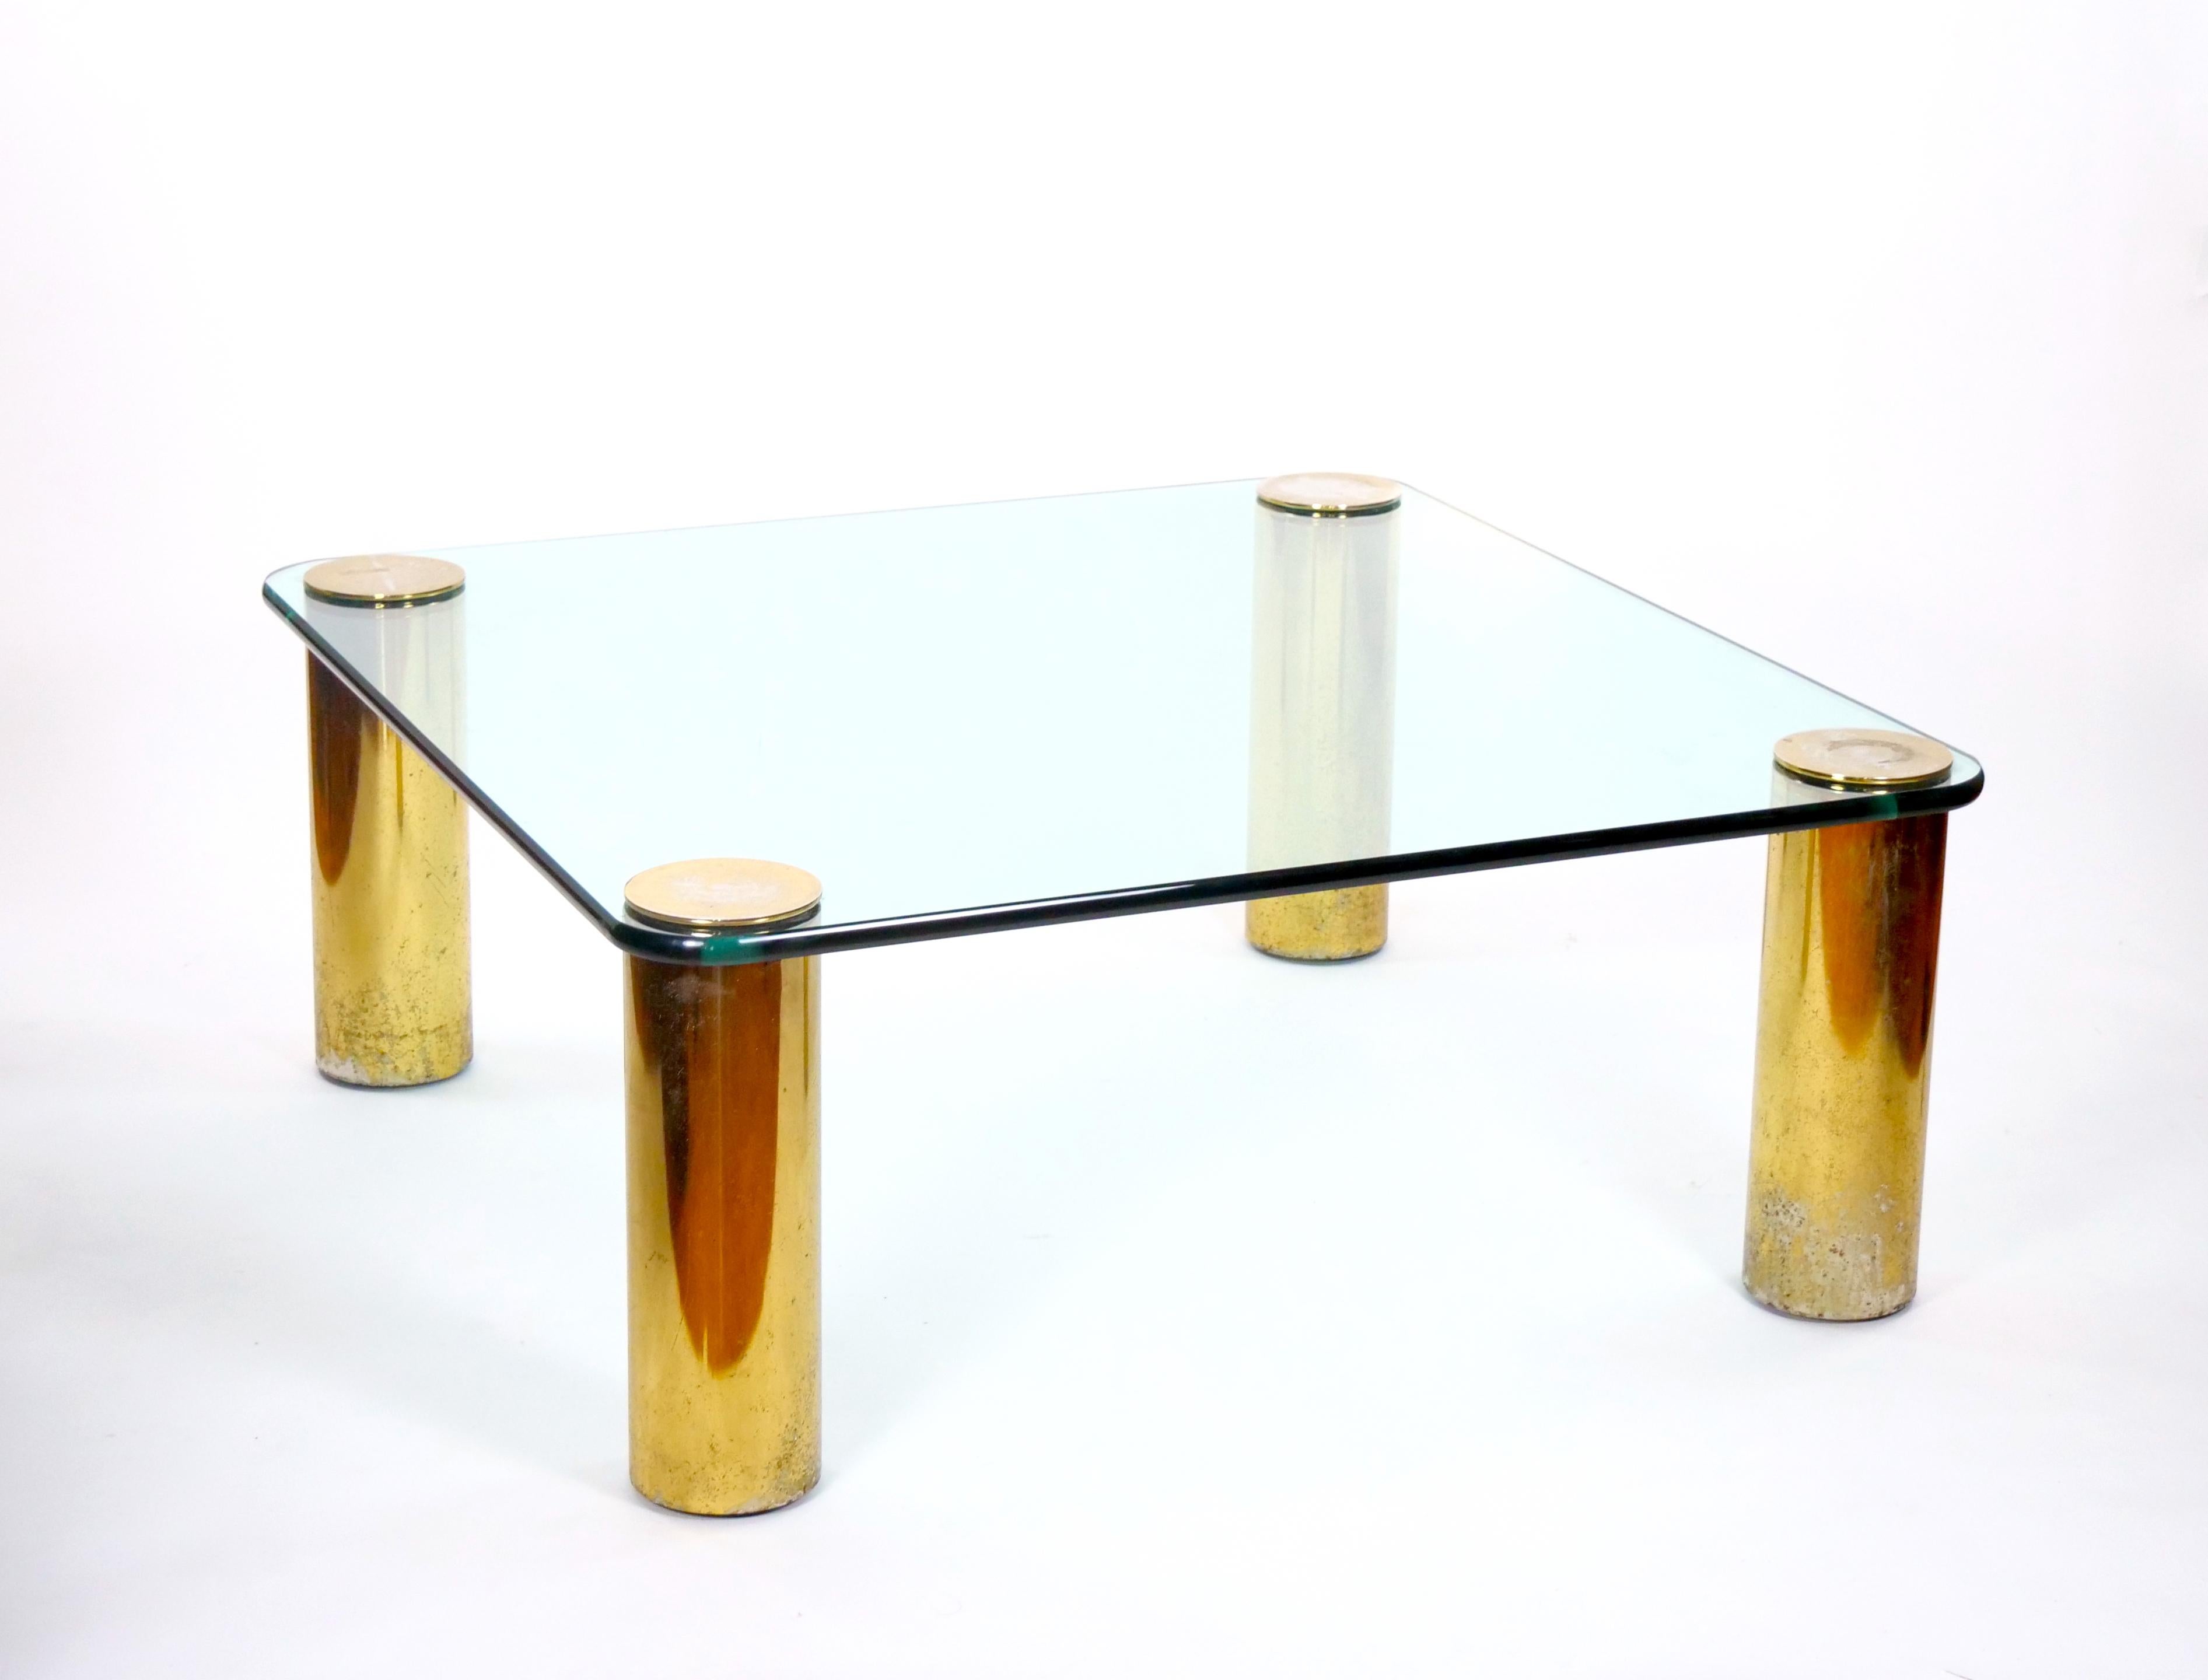 Voici une étonnante table à cocktail de la fin du XXe siècle qui incarne parfaitement le style moderne du milieu du siècle, attribuée à la prestigieuse Collection S Sace. Cette pièce exquise présente un lourd plateau en verre gracieusement équilibré